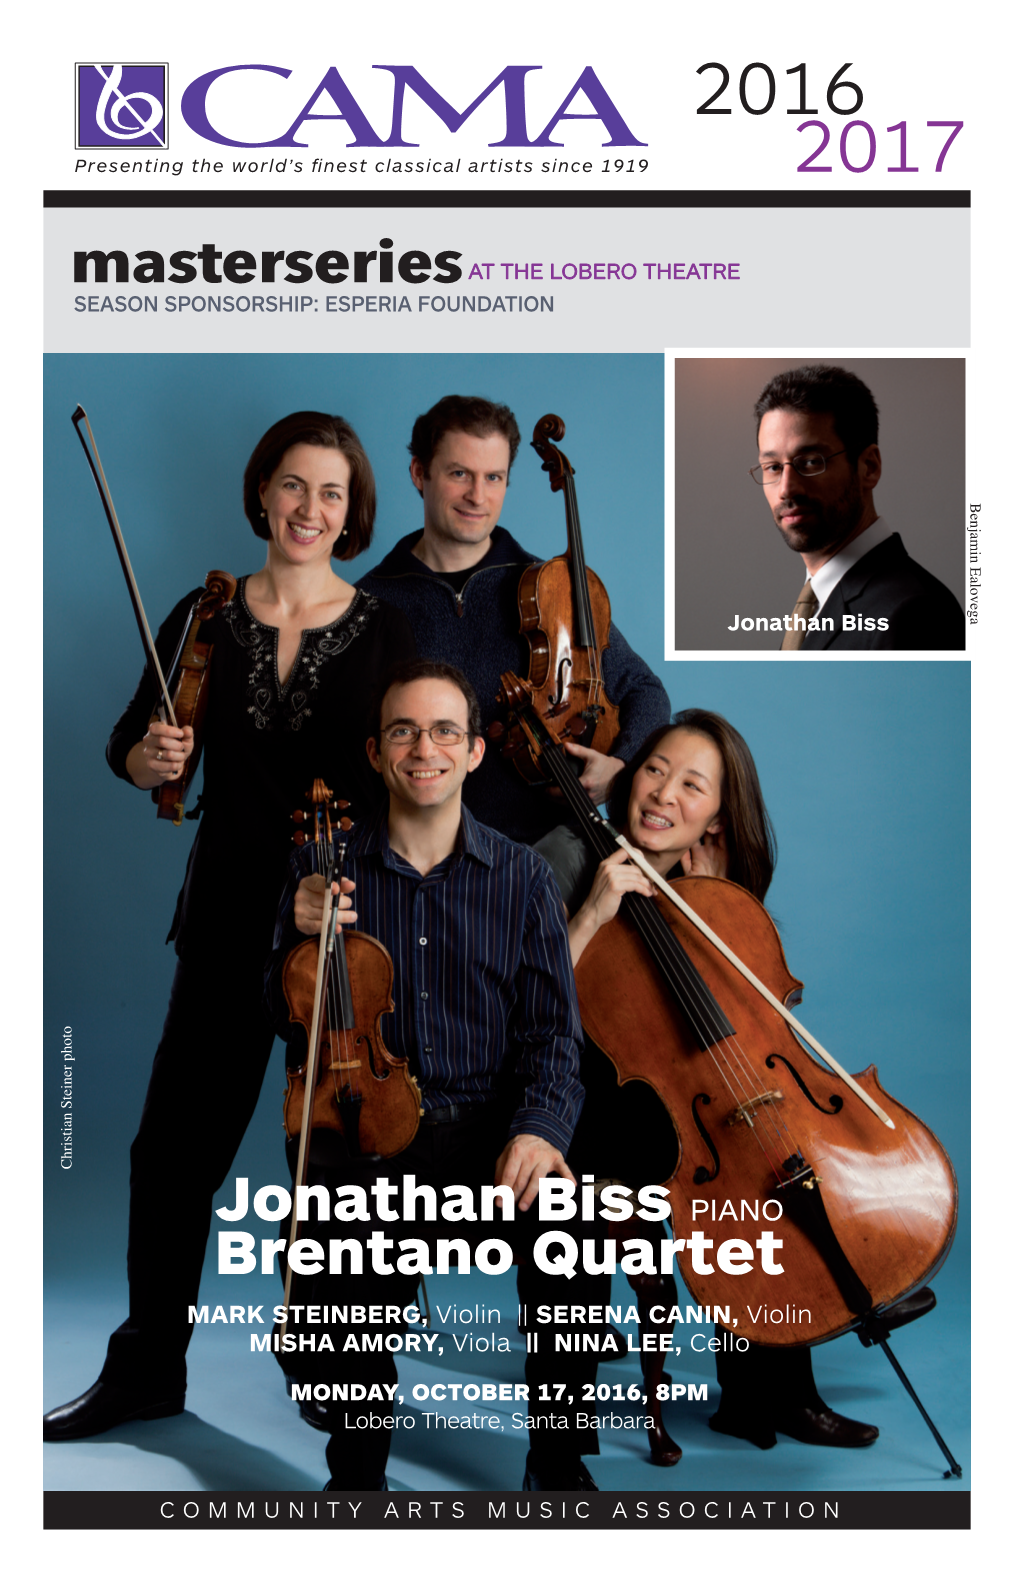 Jonathan Biss PIANO Brentano Quartet MARK STEINBERG, Violin || SERENA CANIN, Violin MISHA AMORY, Viola || NINA LEE, Cello